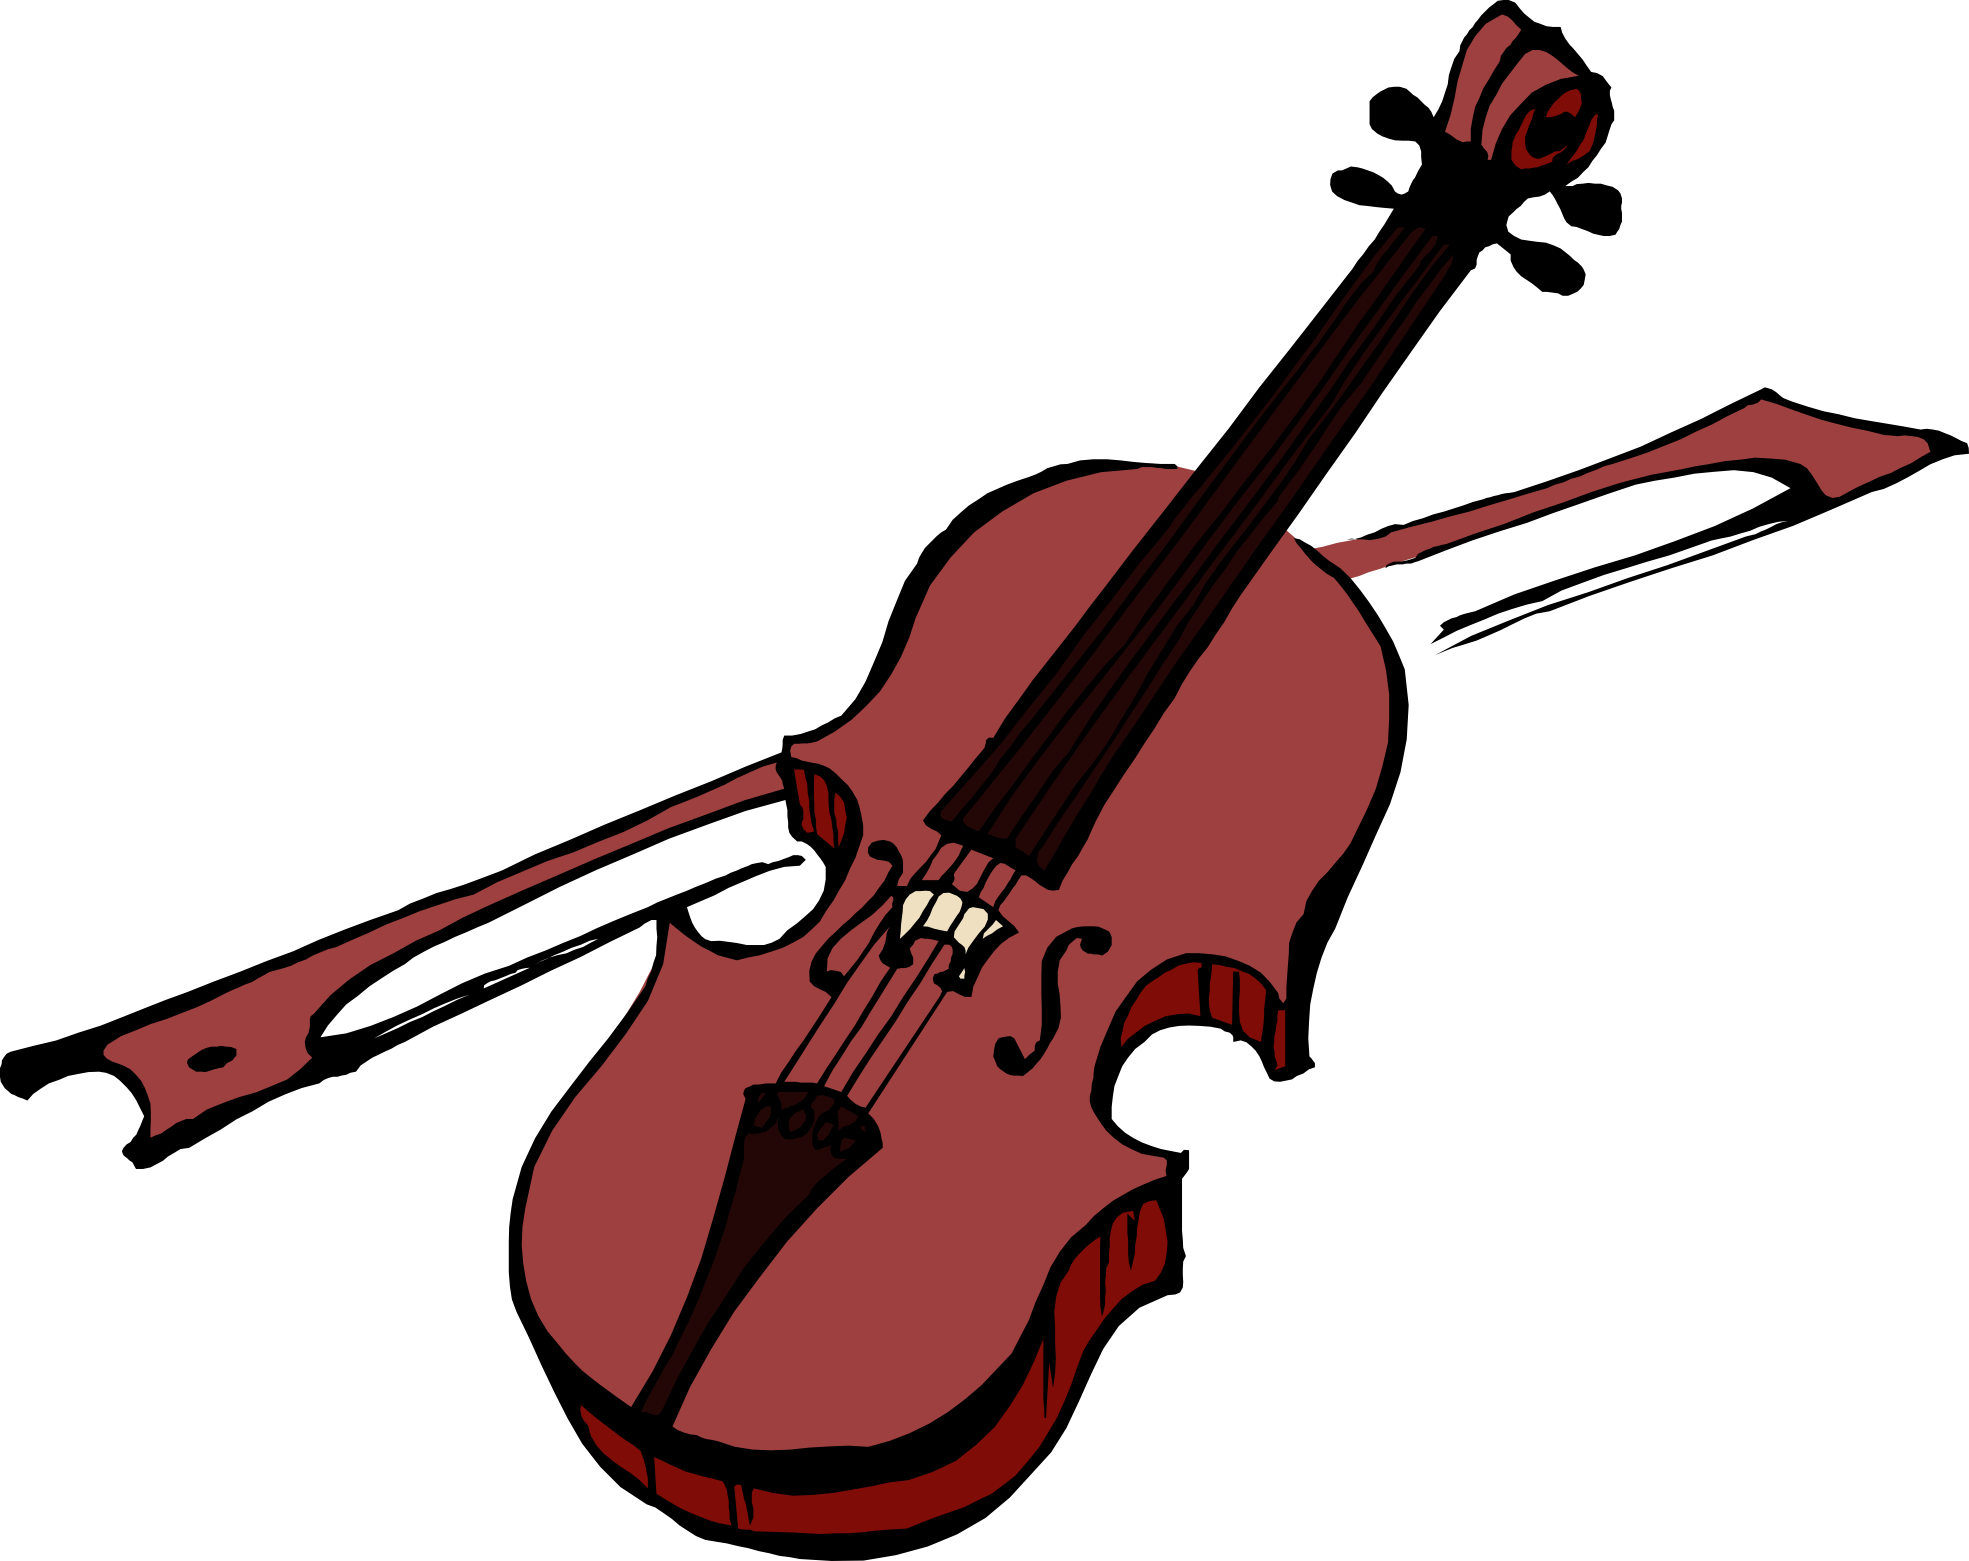 Viola instrument PNG image image